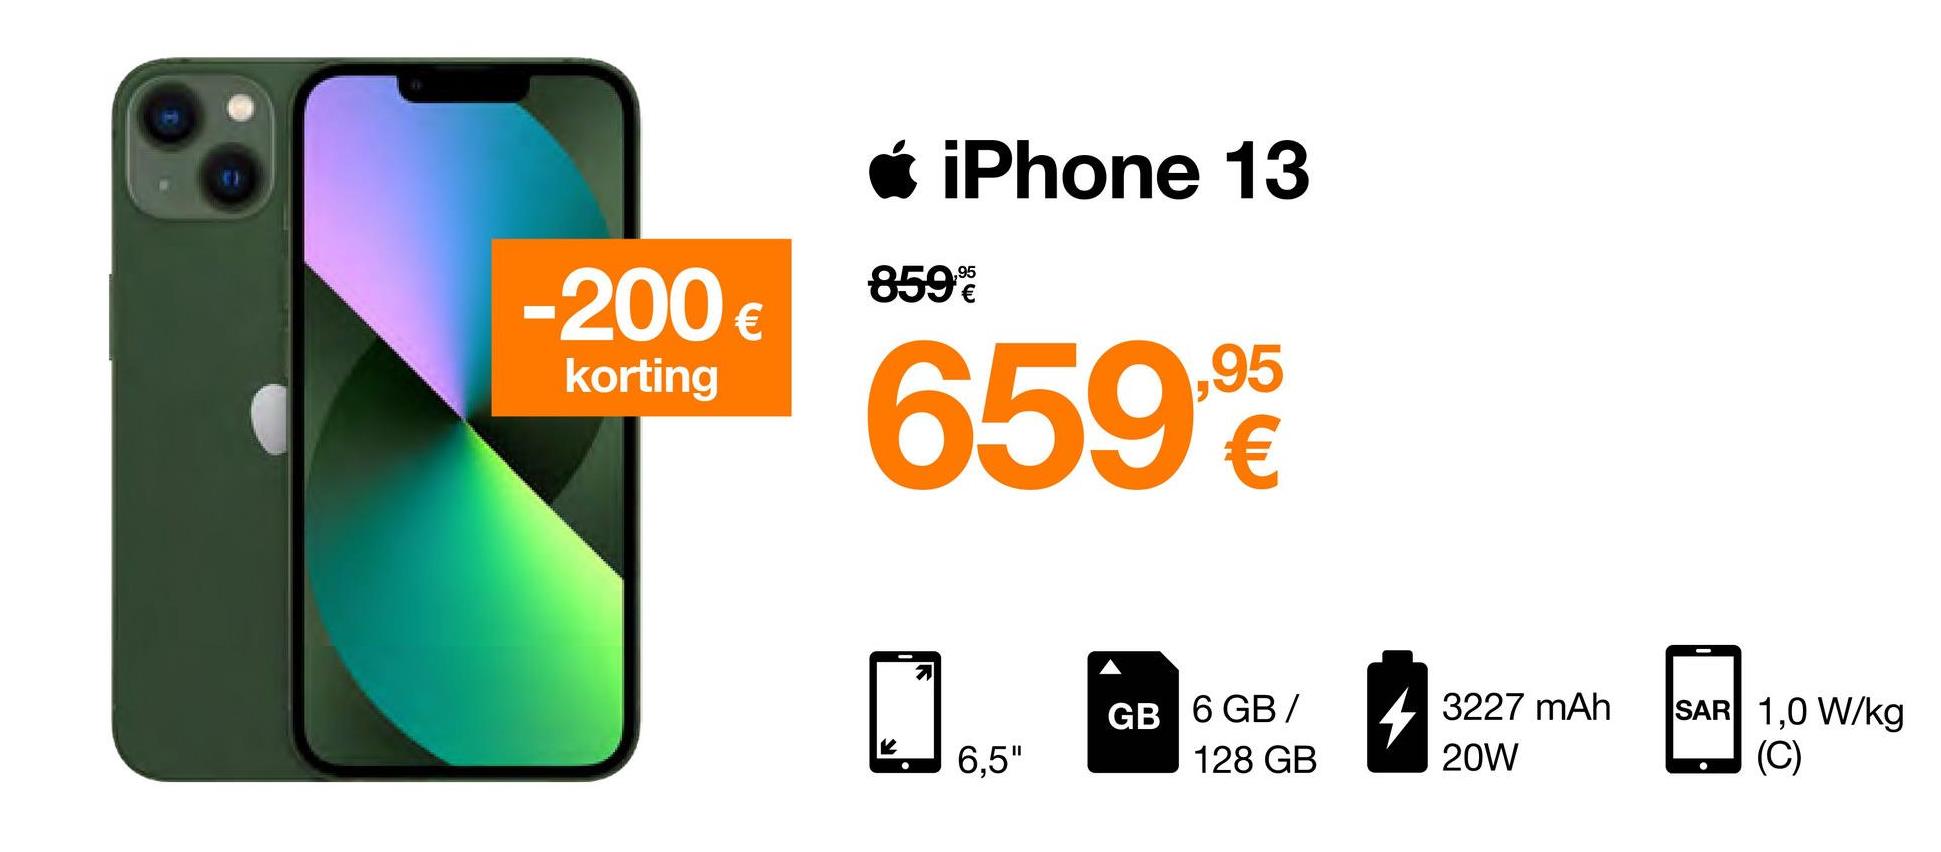 -200 €
korting
* iPhone 13
859%
659.9
€
K
●
2
6,5"
GB 6 GB/
128 GB
3227 mAh
20W
SAR 1,0 W/kg
(C)